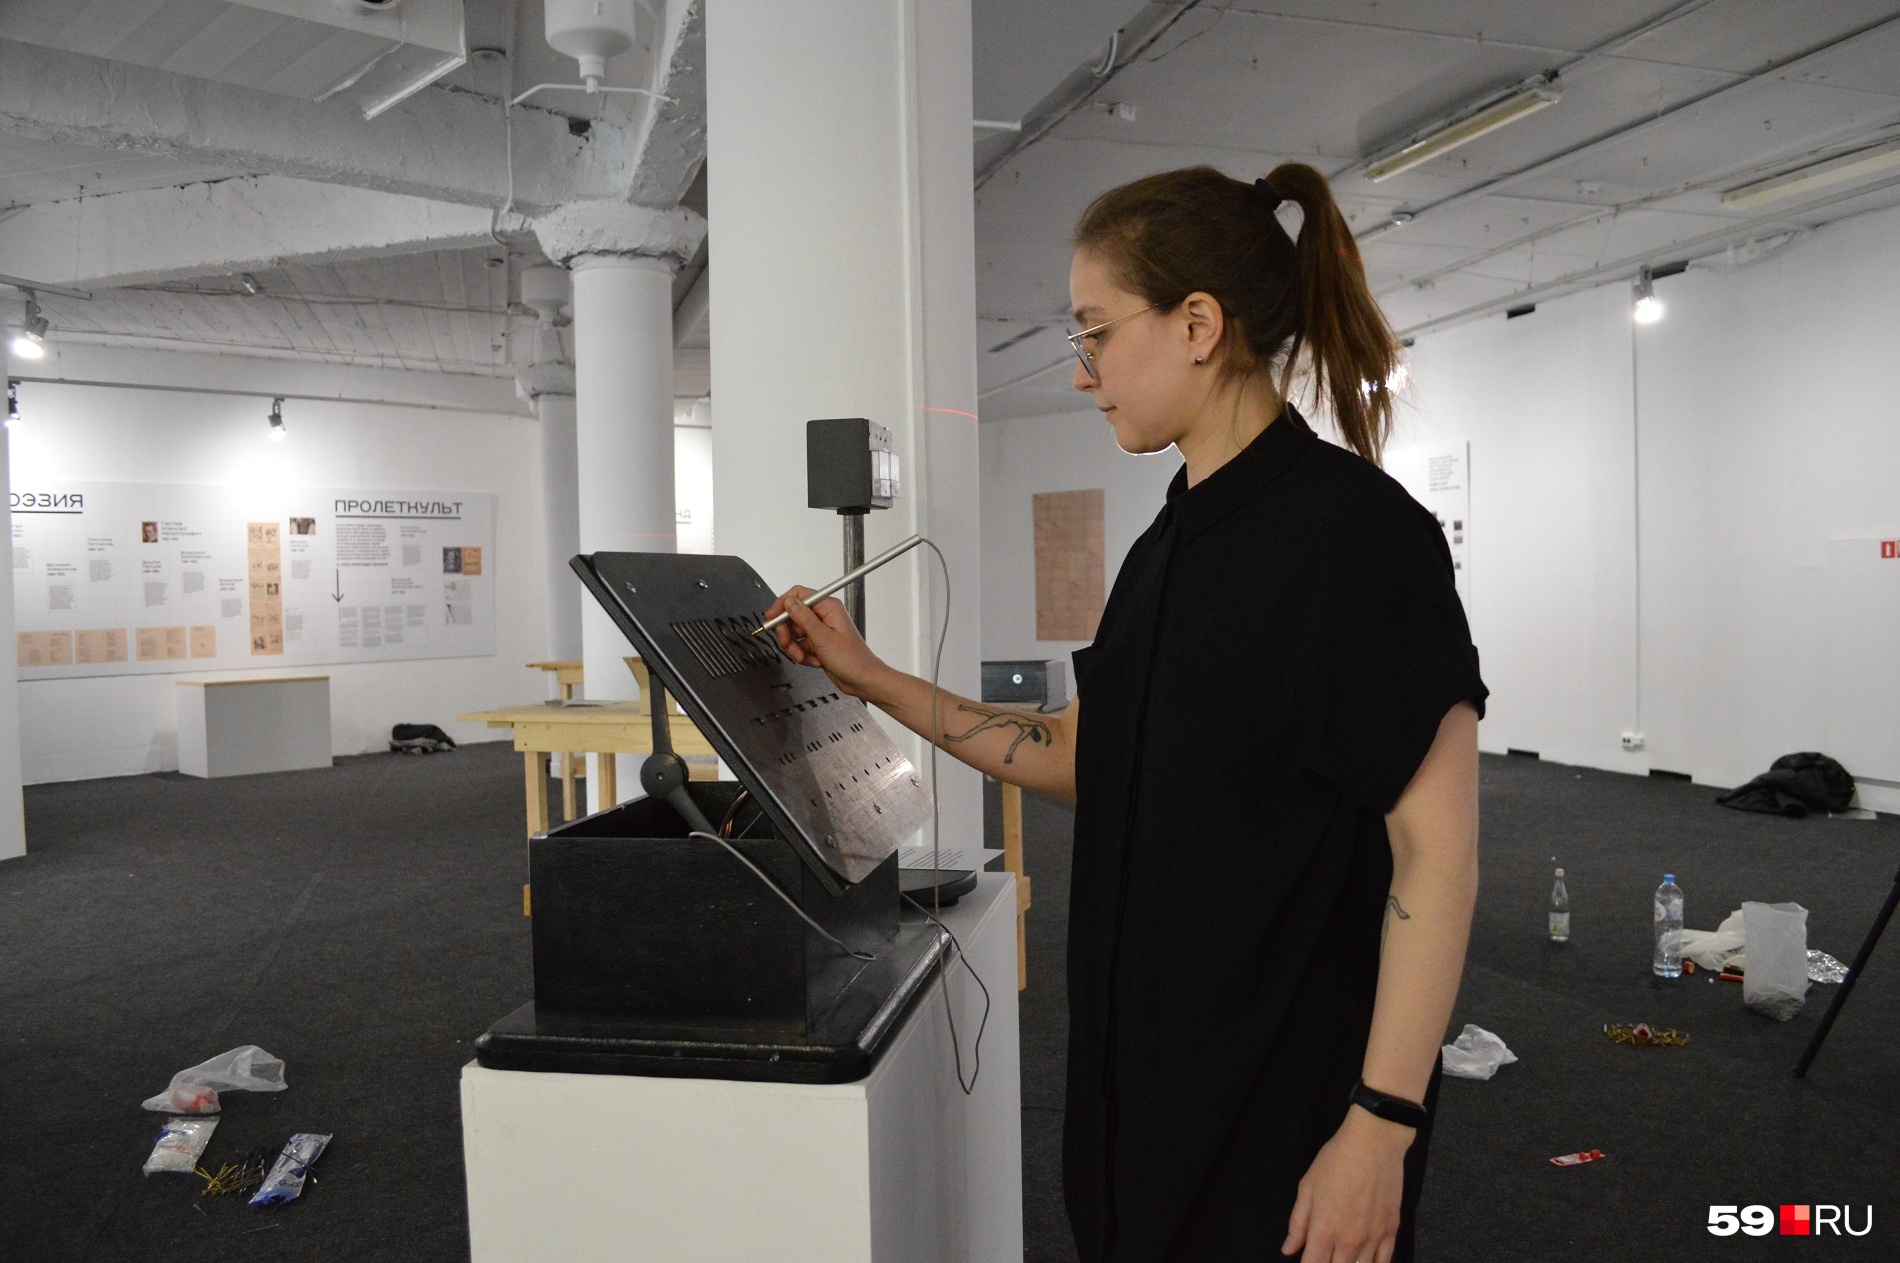 Руководитель галереи «На Шаболовке» Катерина Телегина демонстрирует работу одного из аппаратов, тренирующих точность